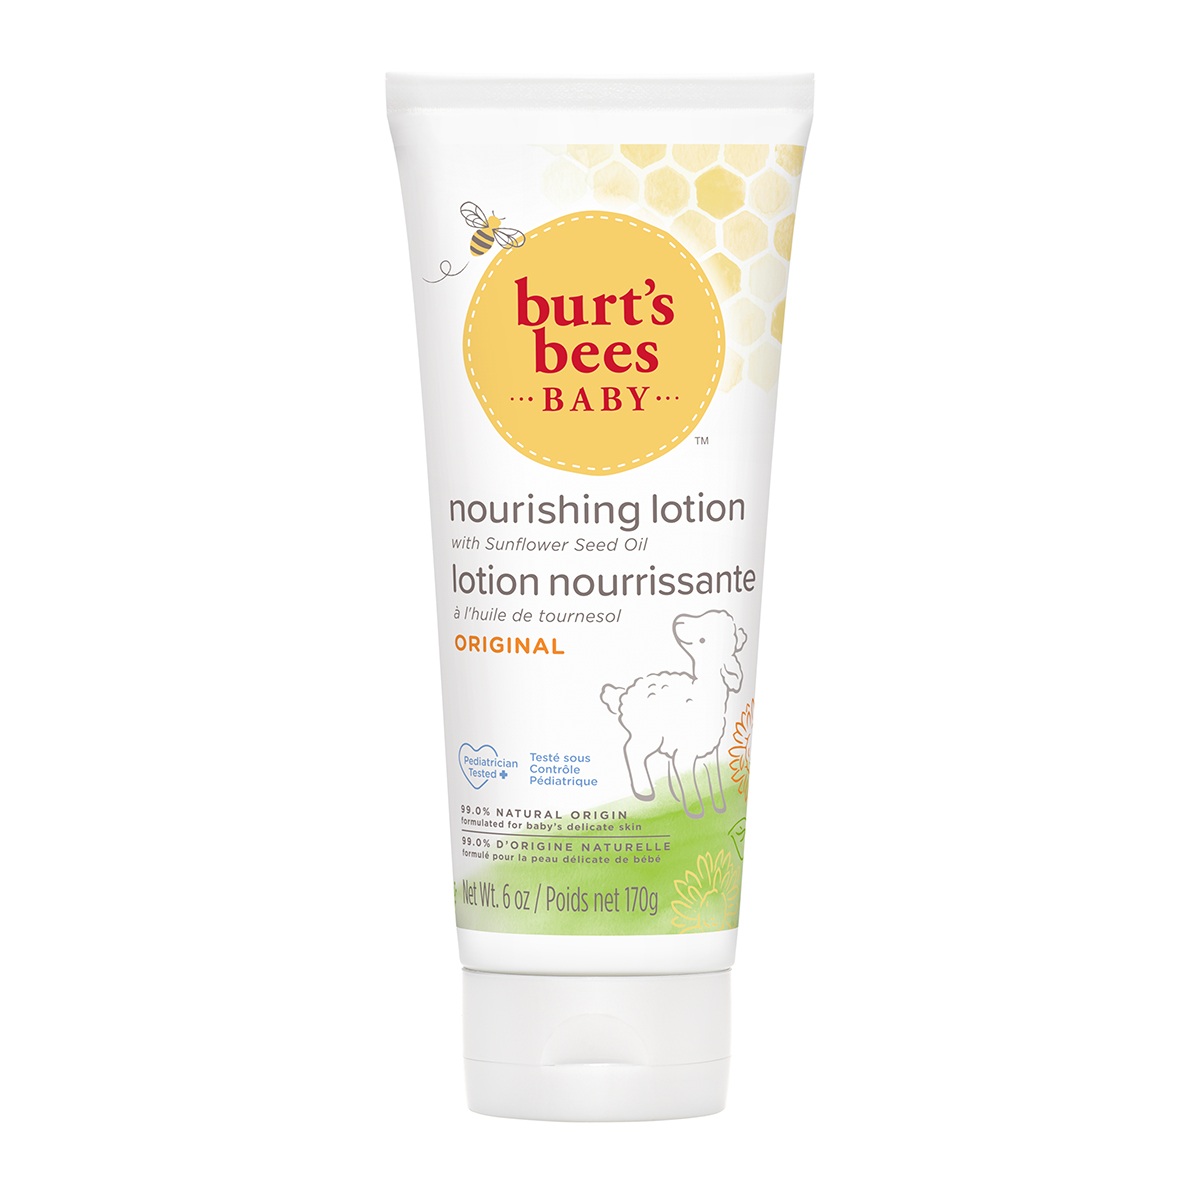 Burt's Bees - Burt’s bees® baby bee nourishing lotion 170g